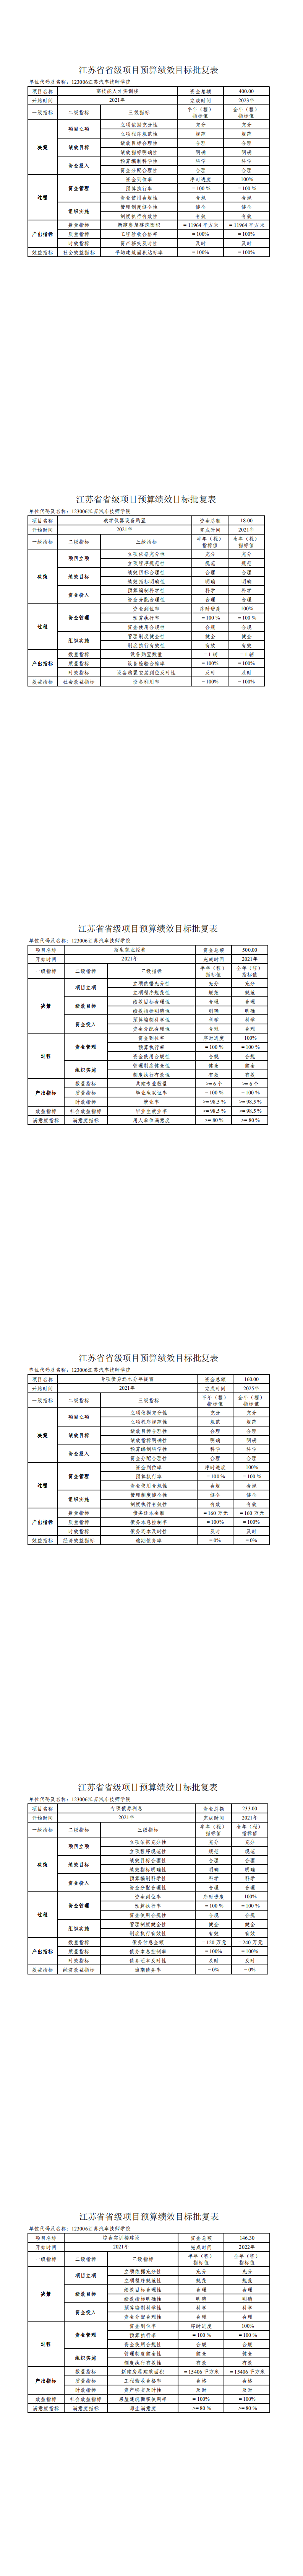 江苏汽车技师学院部门预算项目绩效目标_0.png